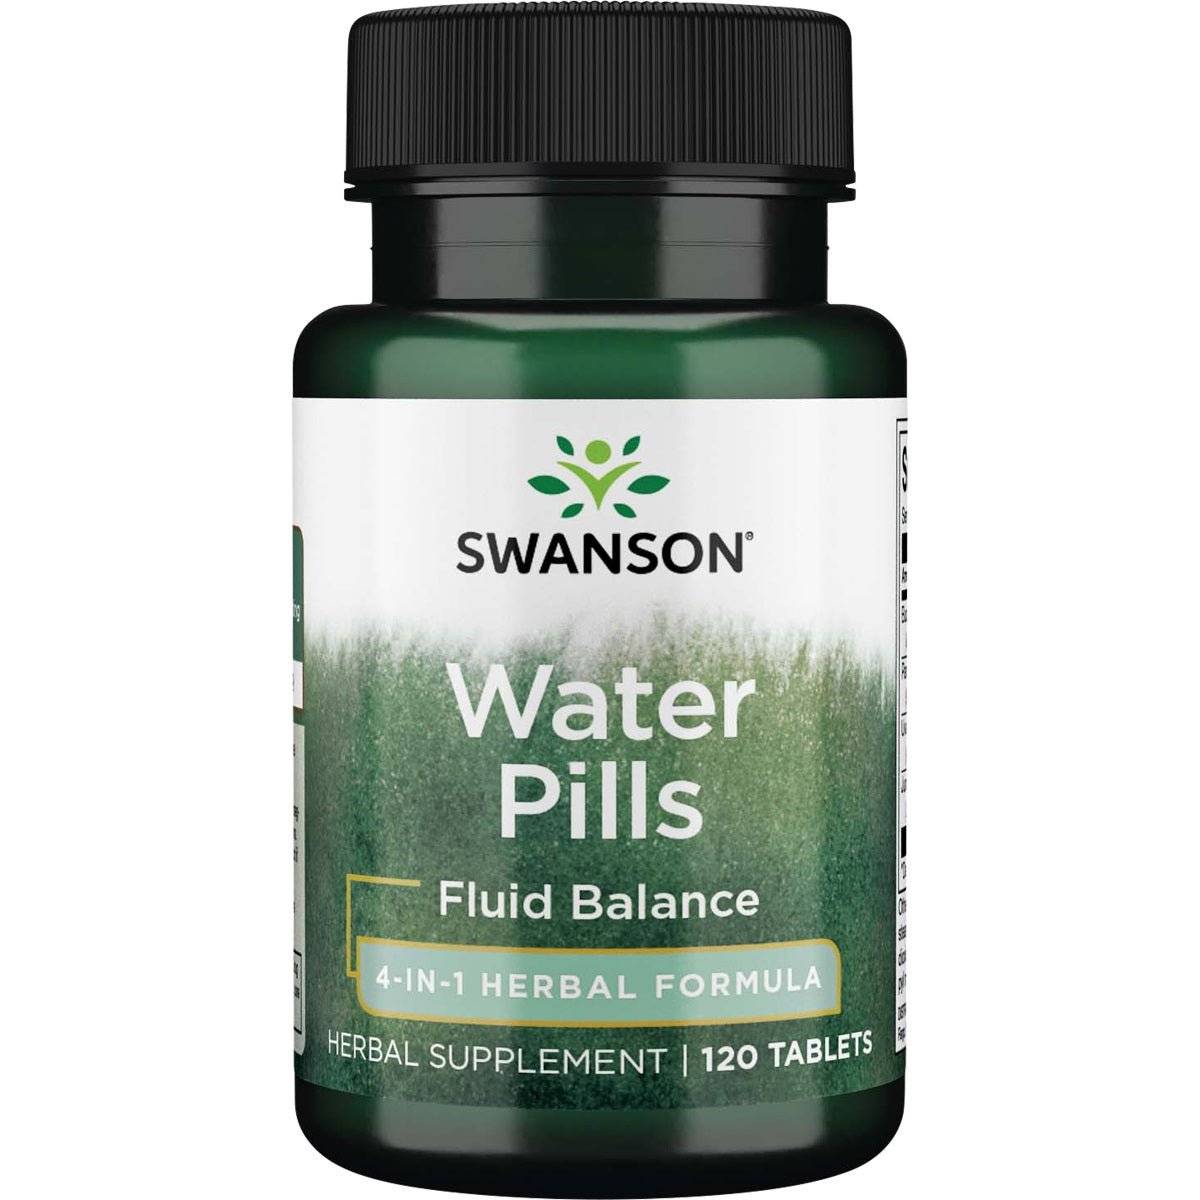 Swanson Water Pills skysčių varimui, 120 tablečių - Maisto papildai Sveikata1.lt